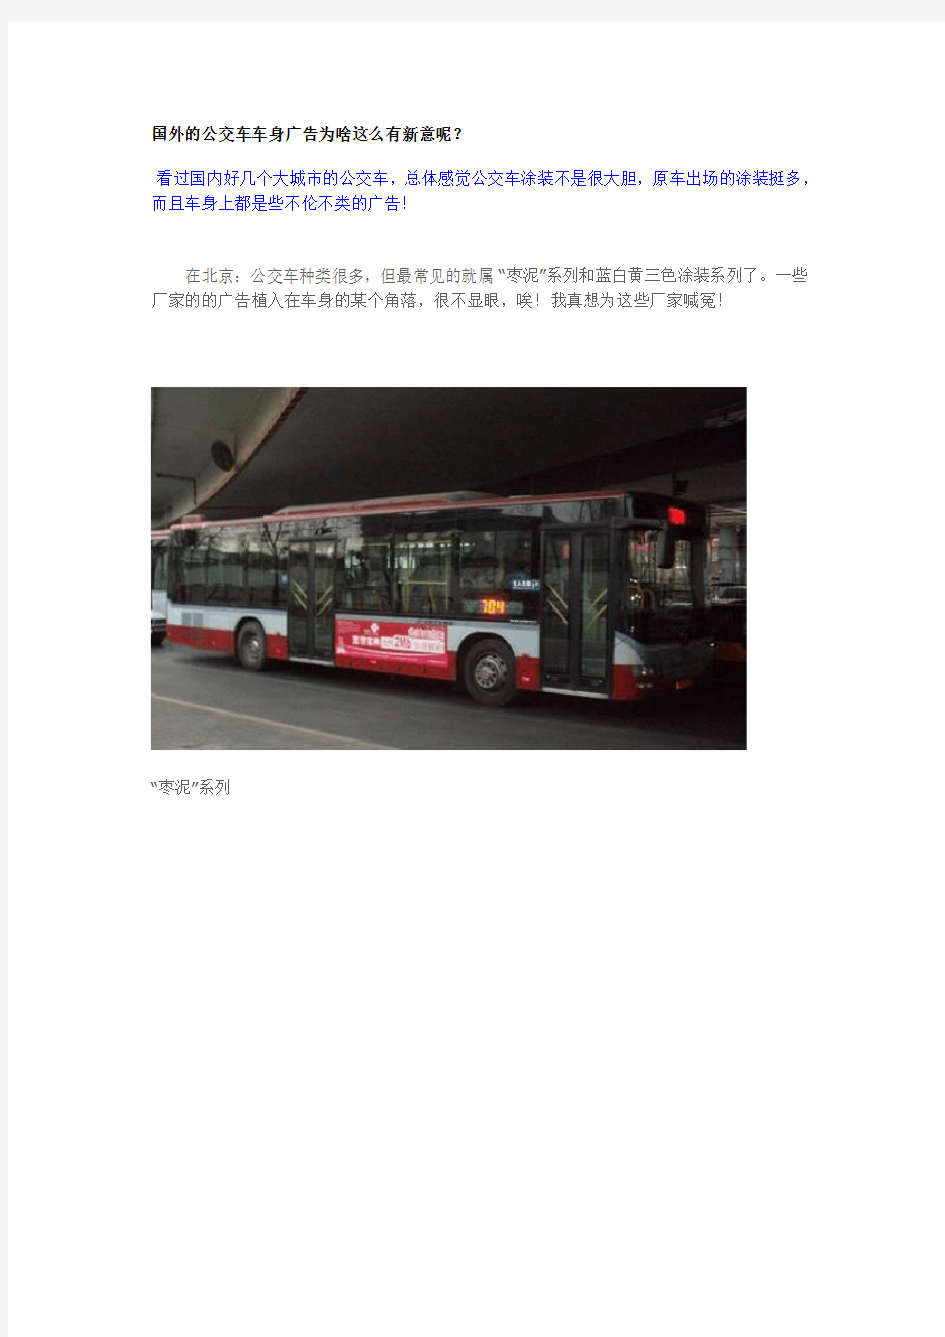 国外的公交车车身广告为啥这么有新意呢